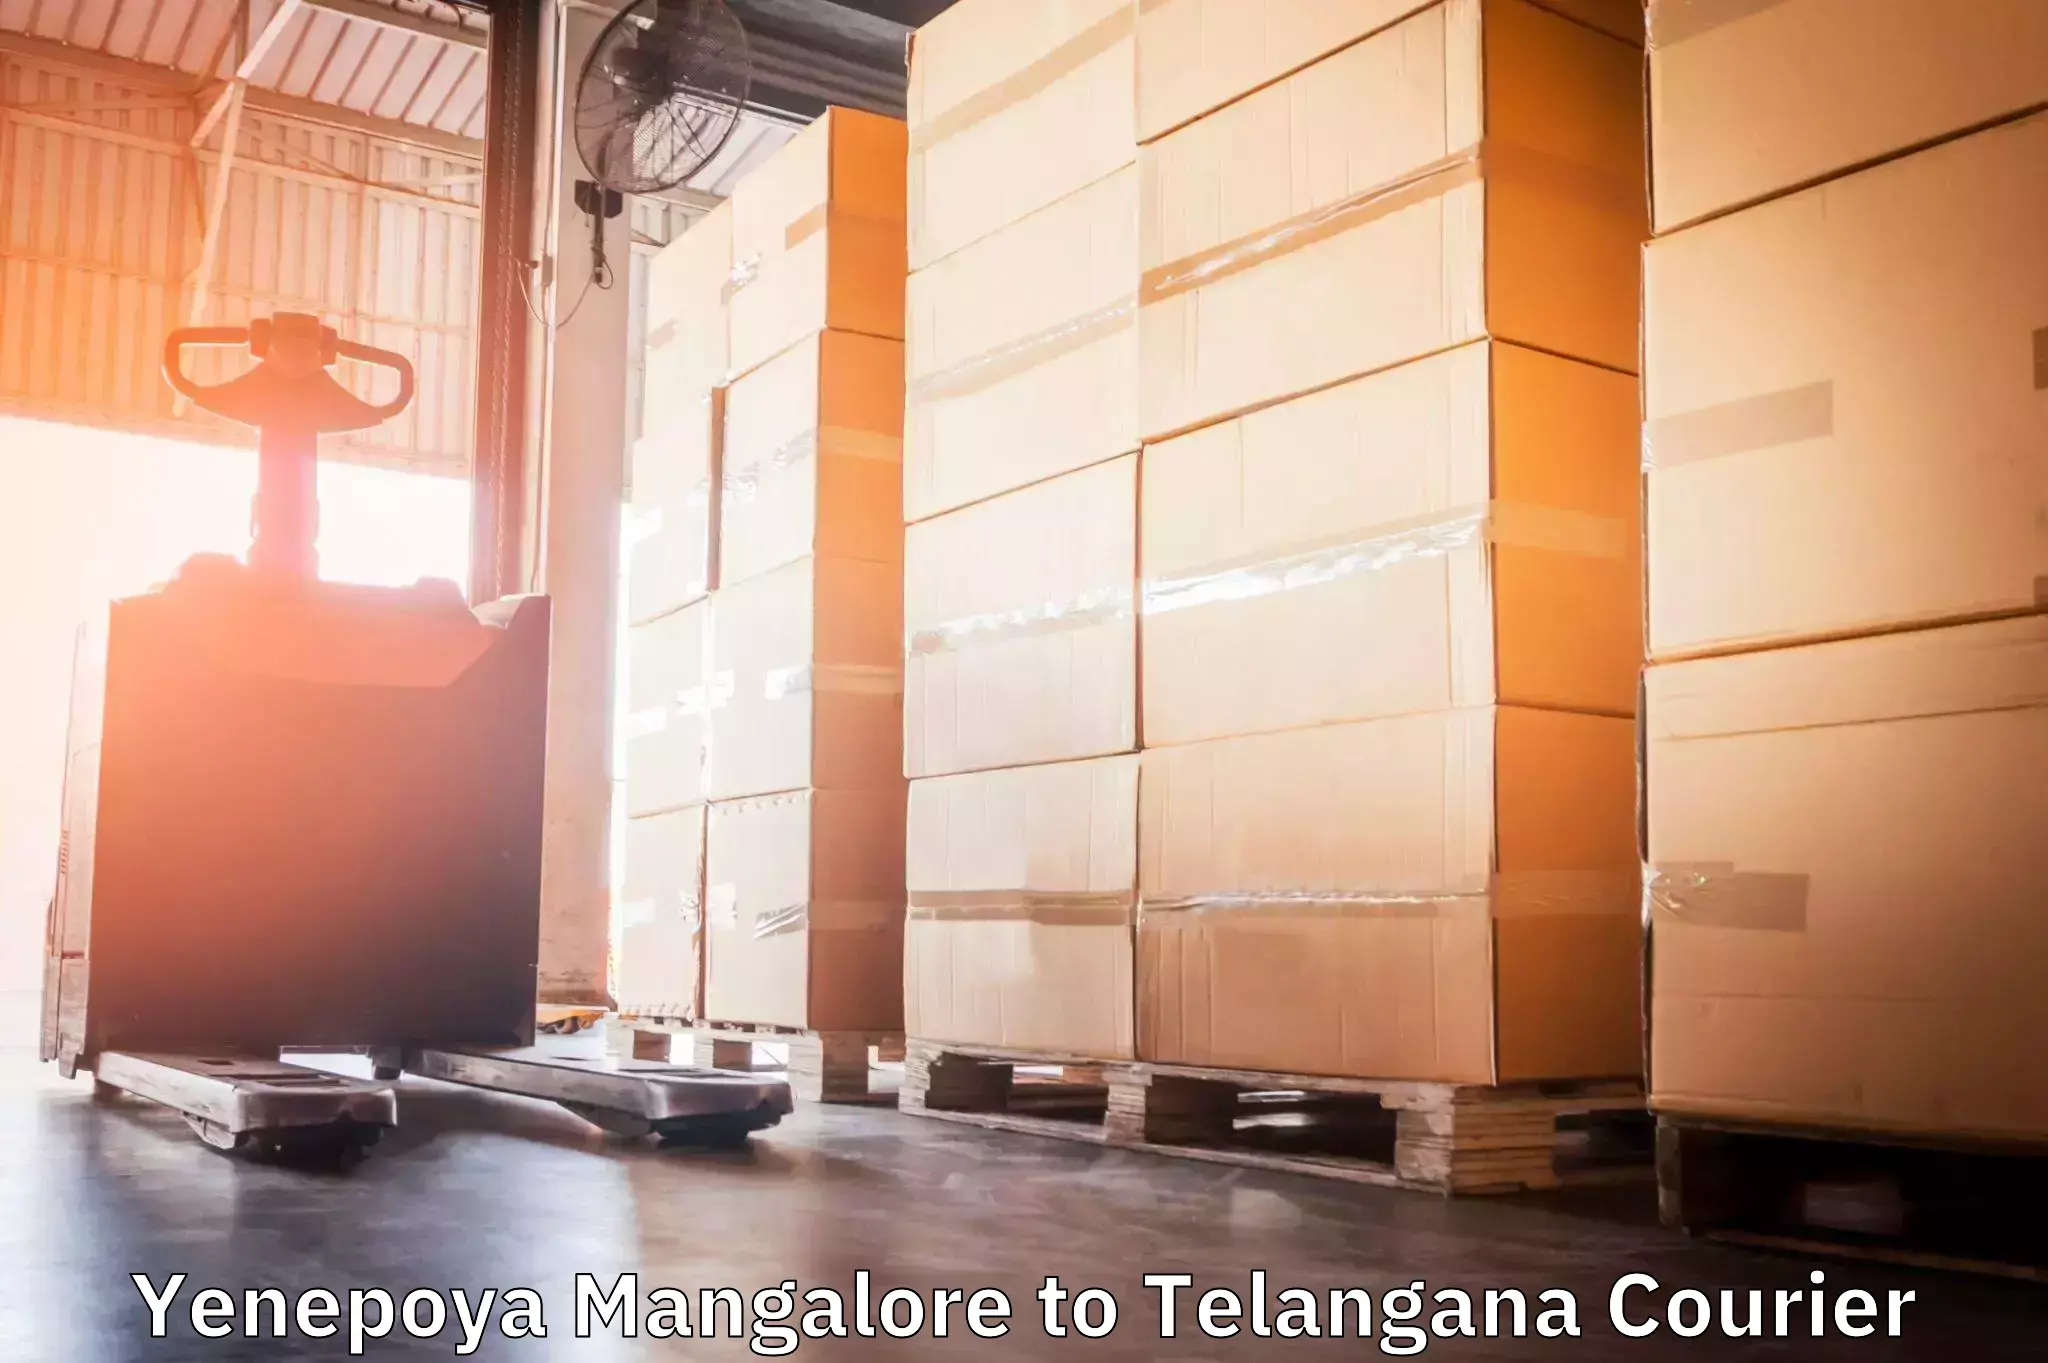 Individual parcel service Yenepoya Mangalore to Telangana